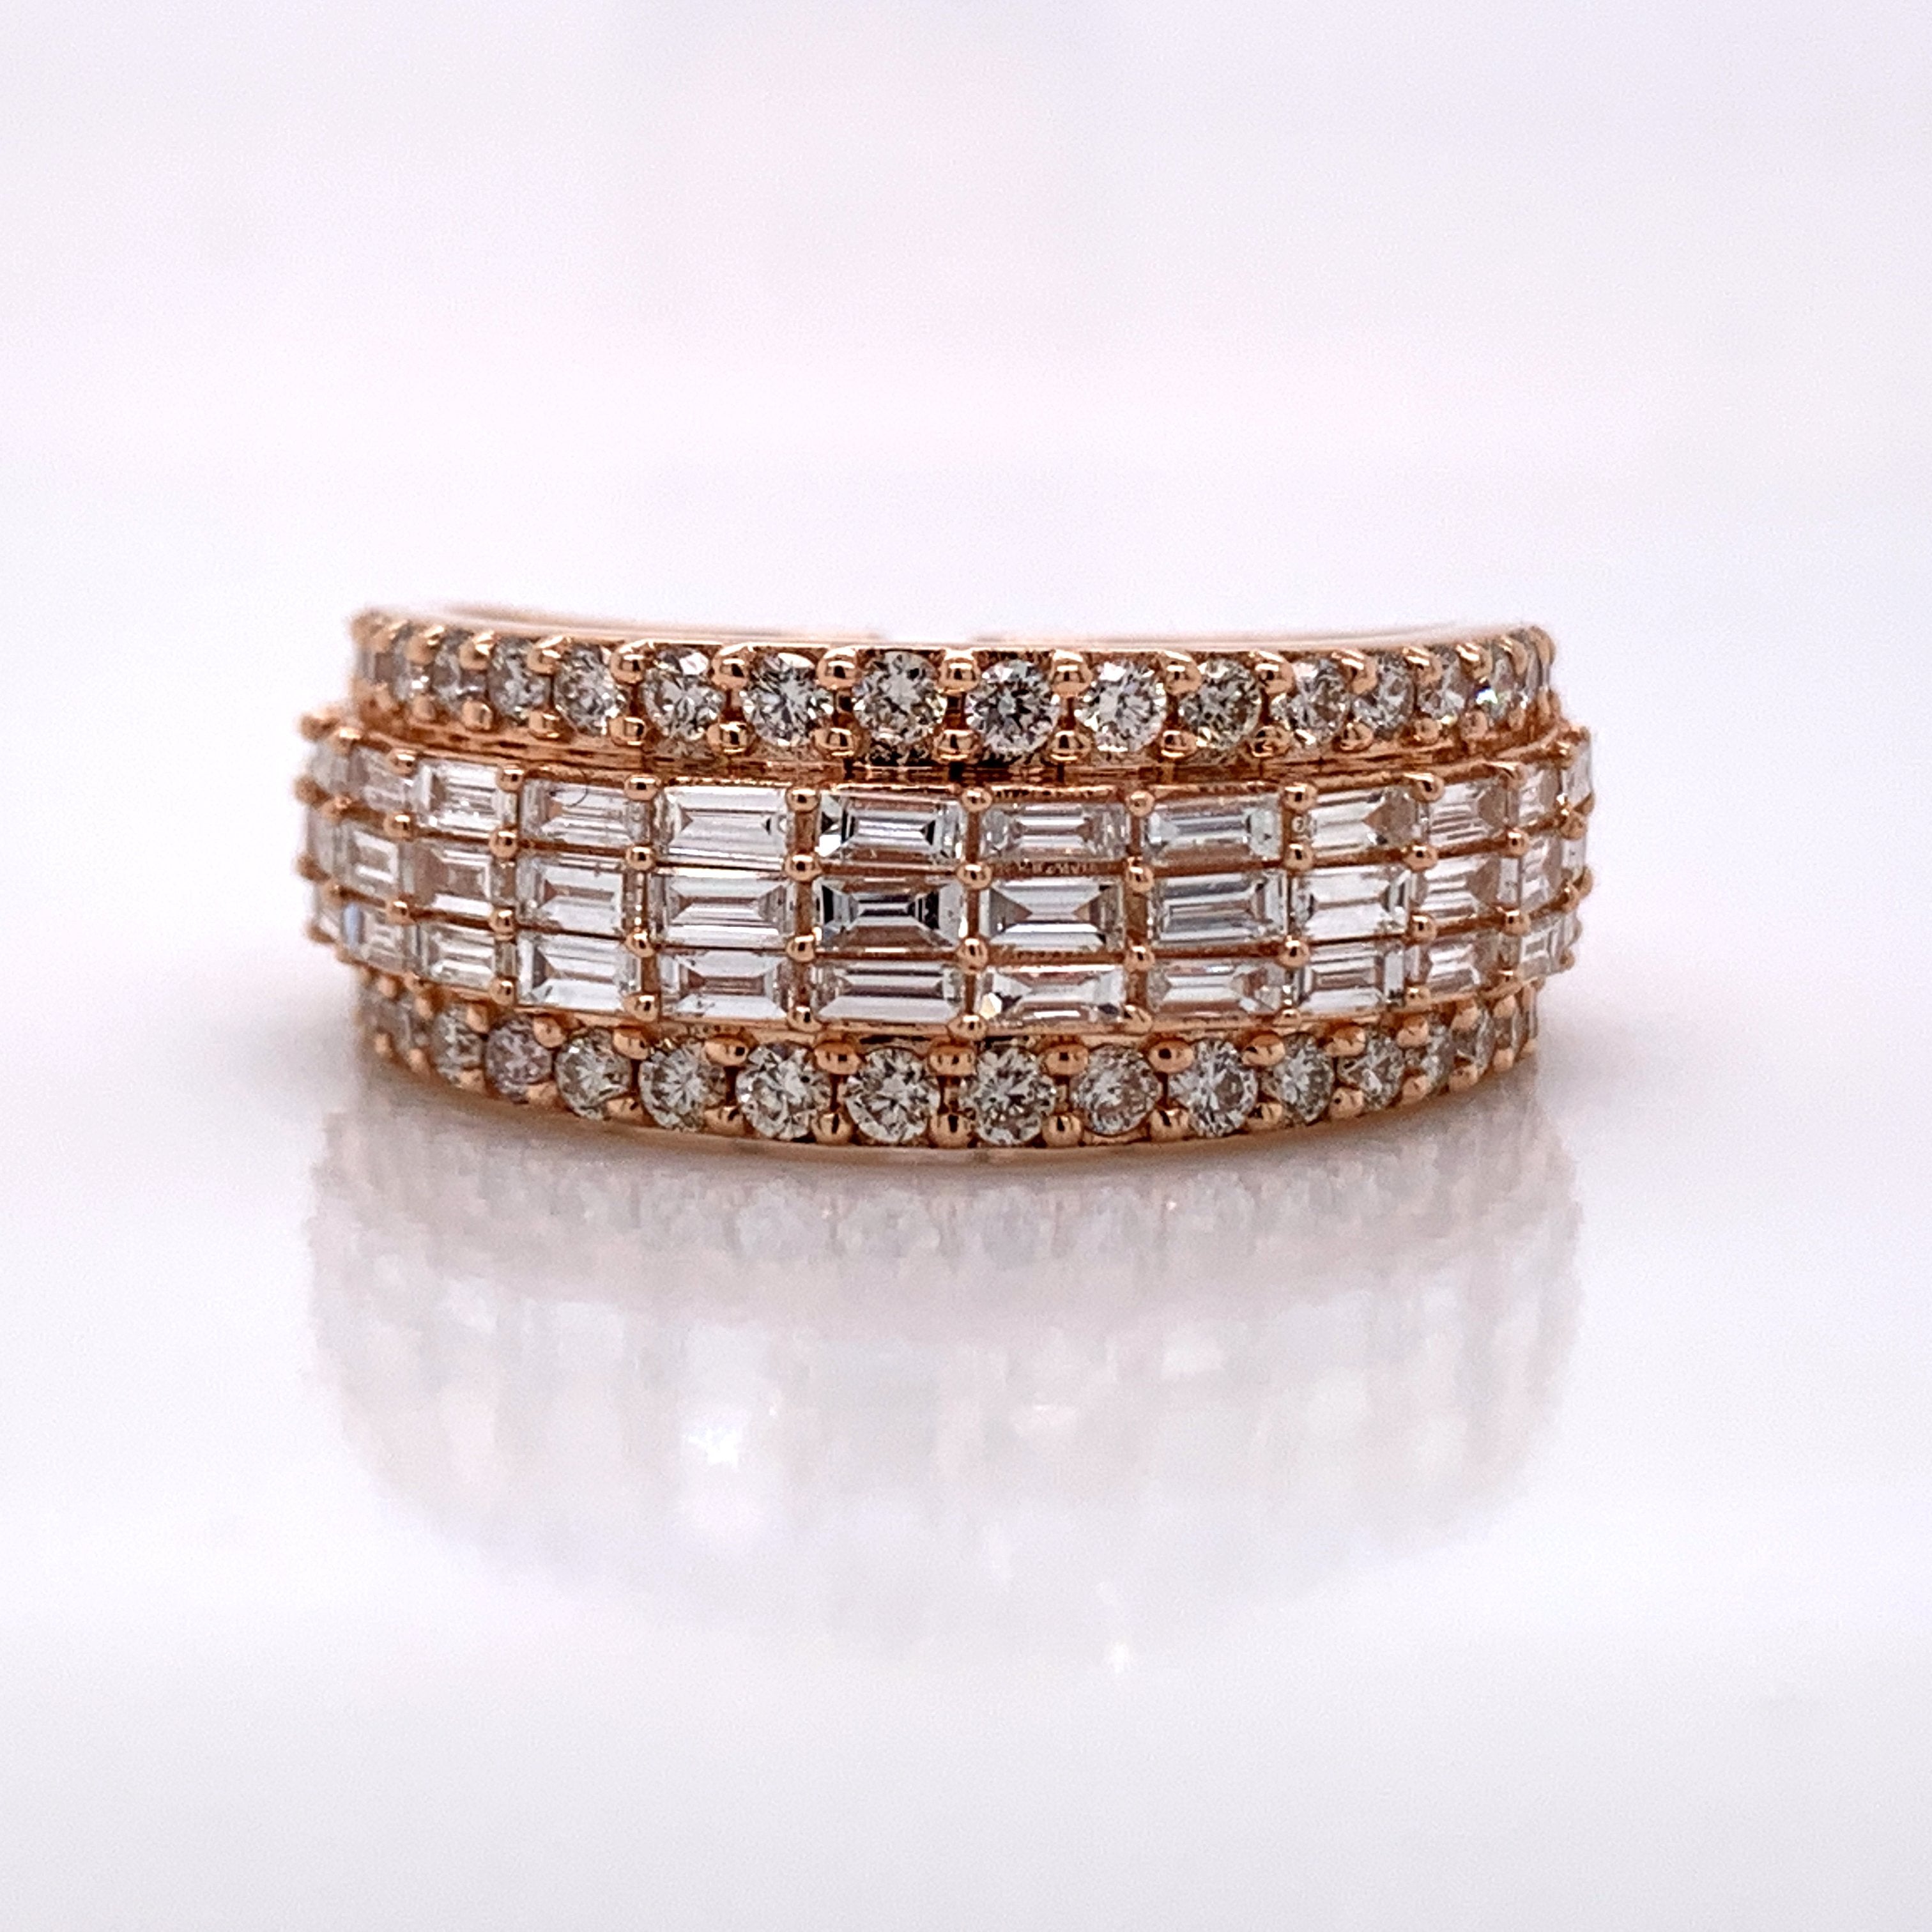 1.92CT Diamond 14K Rose Gold Ring - White Carat Diamonds 